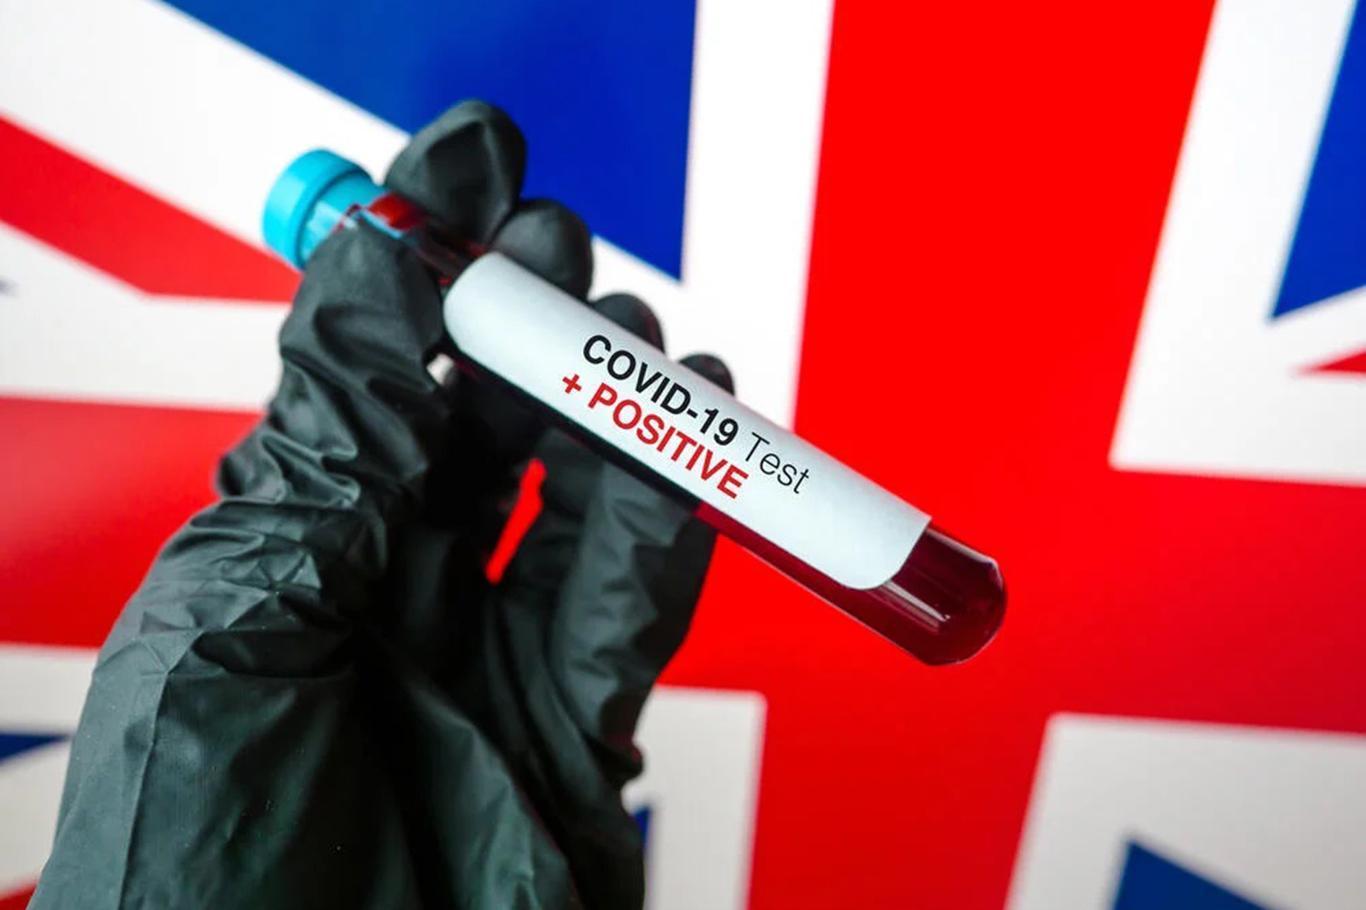 İngiltere'de Coronavirus kaynaklı ölümlerin daha yüksek olduğu iddia edildi